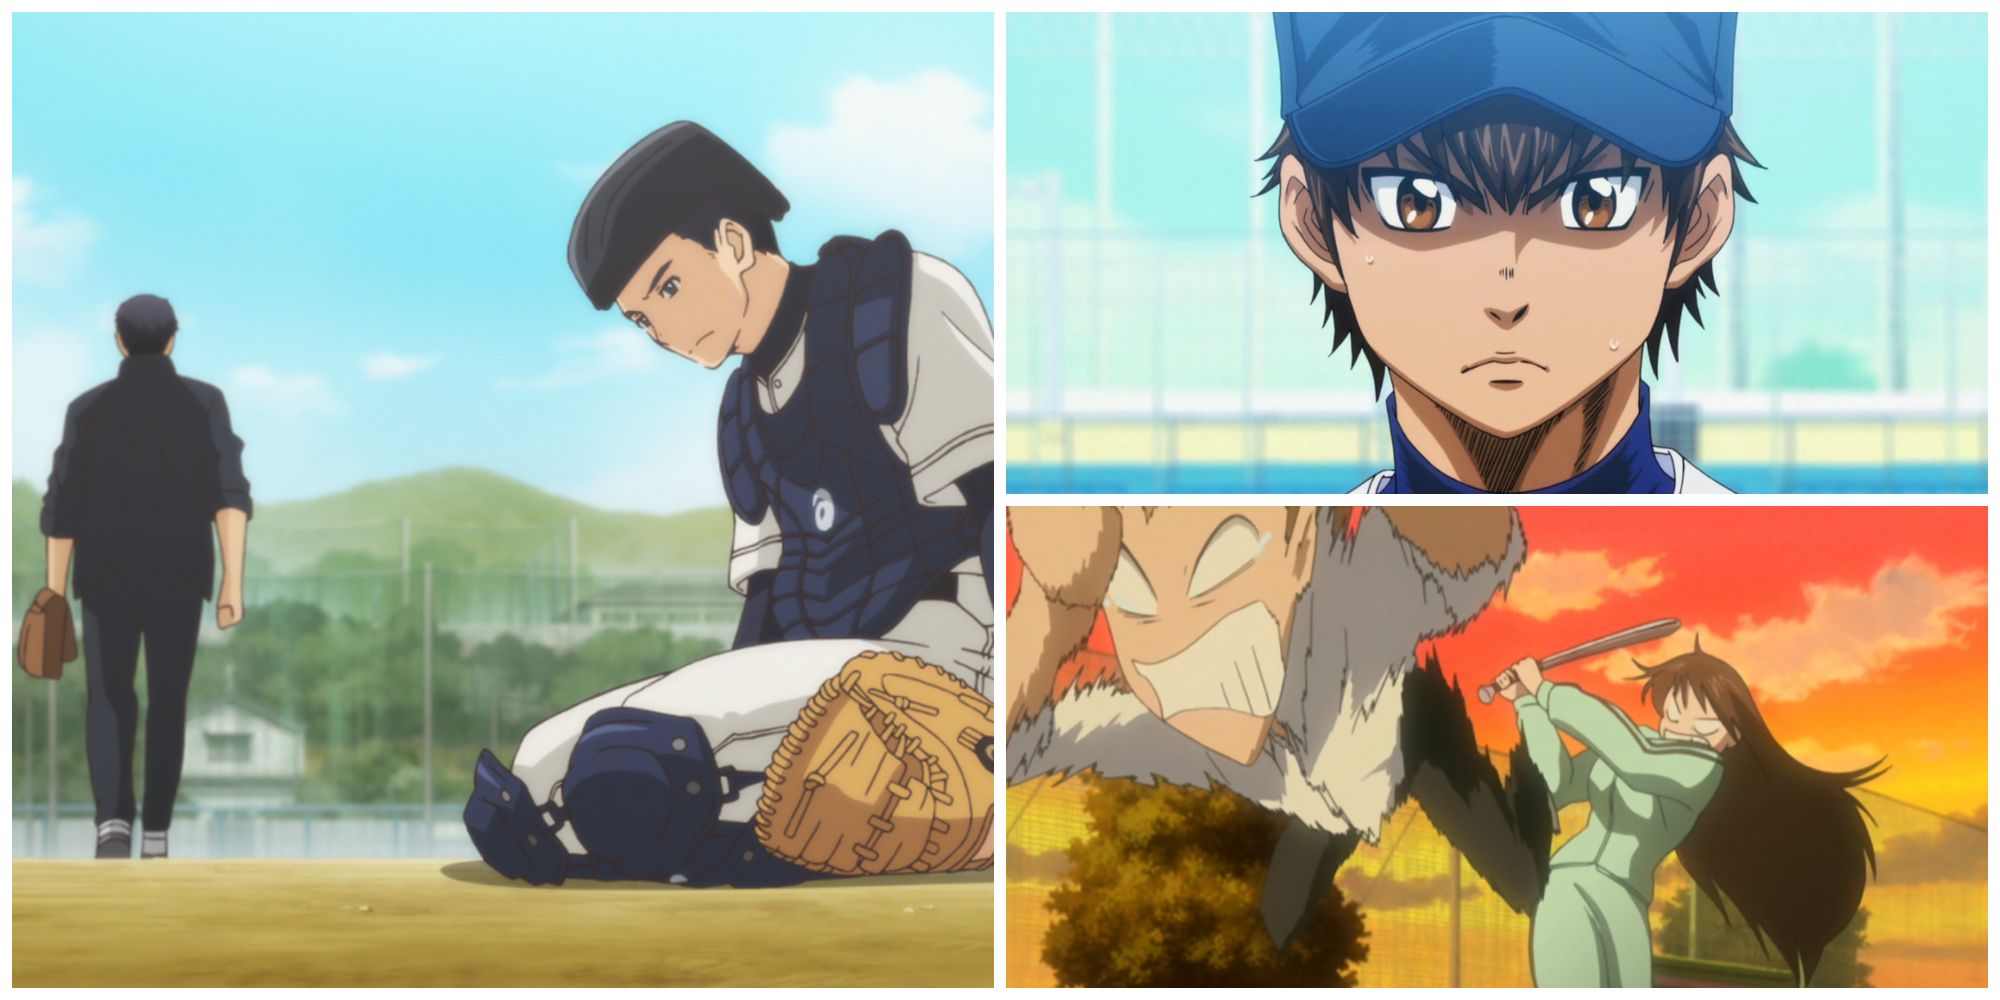 10 Best Baseball Anime